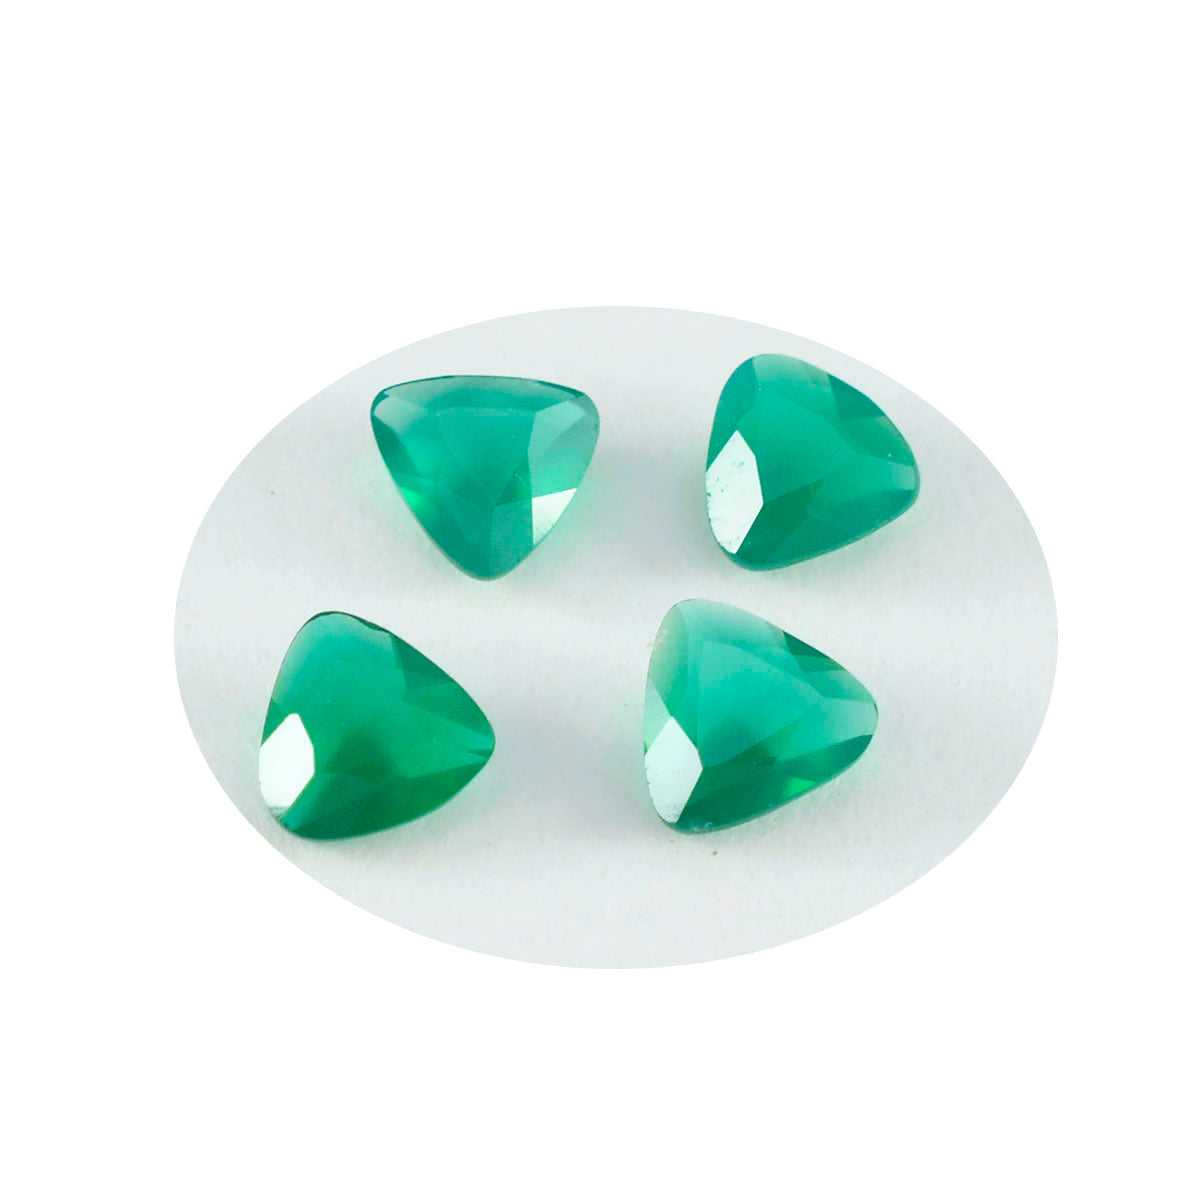 Riyogems 1PC Genuine Green Onyx Faceted 8x8 mm Trillion Shape wonderful Quality Gems